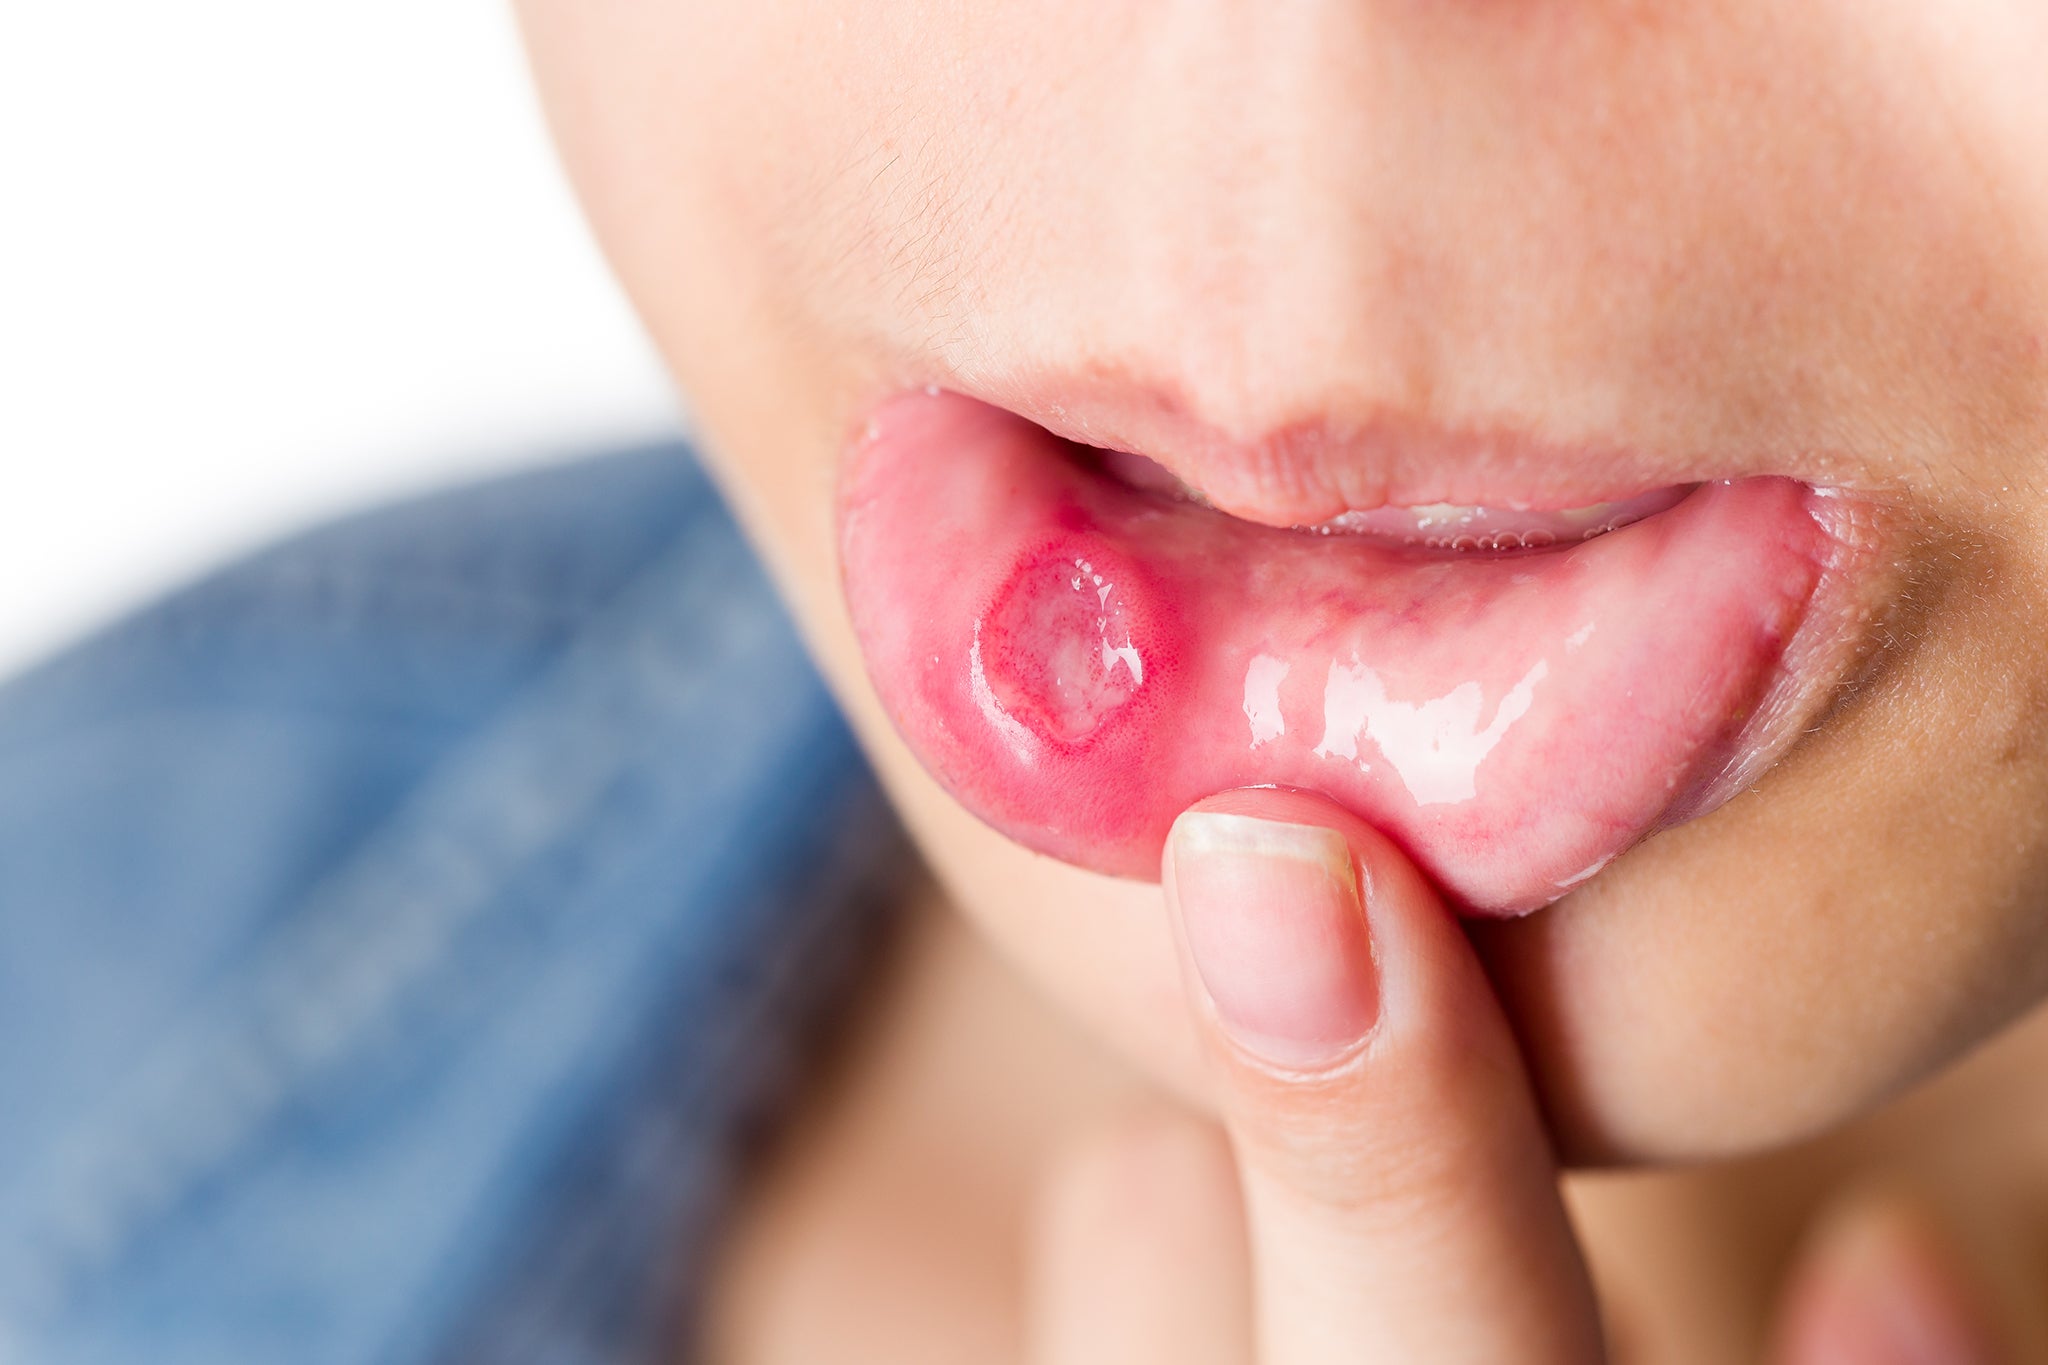 Co to jest afta i dlaczego powstaje w jamie ustnej?